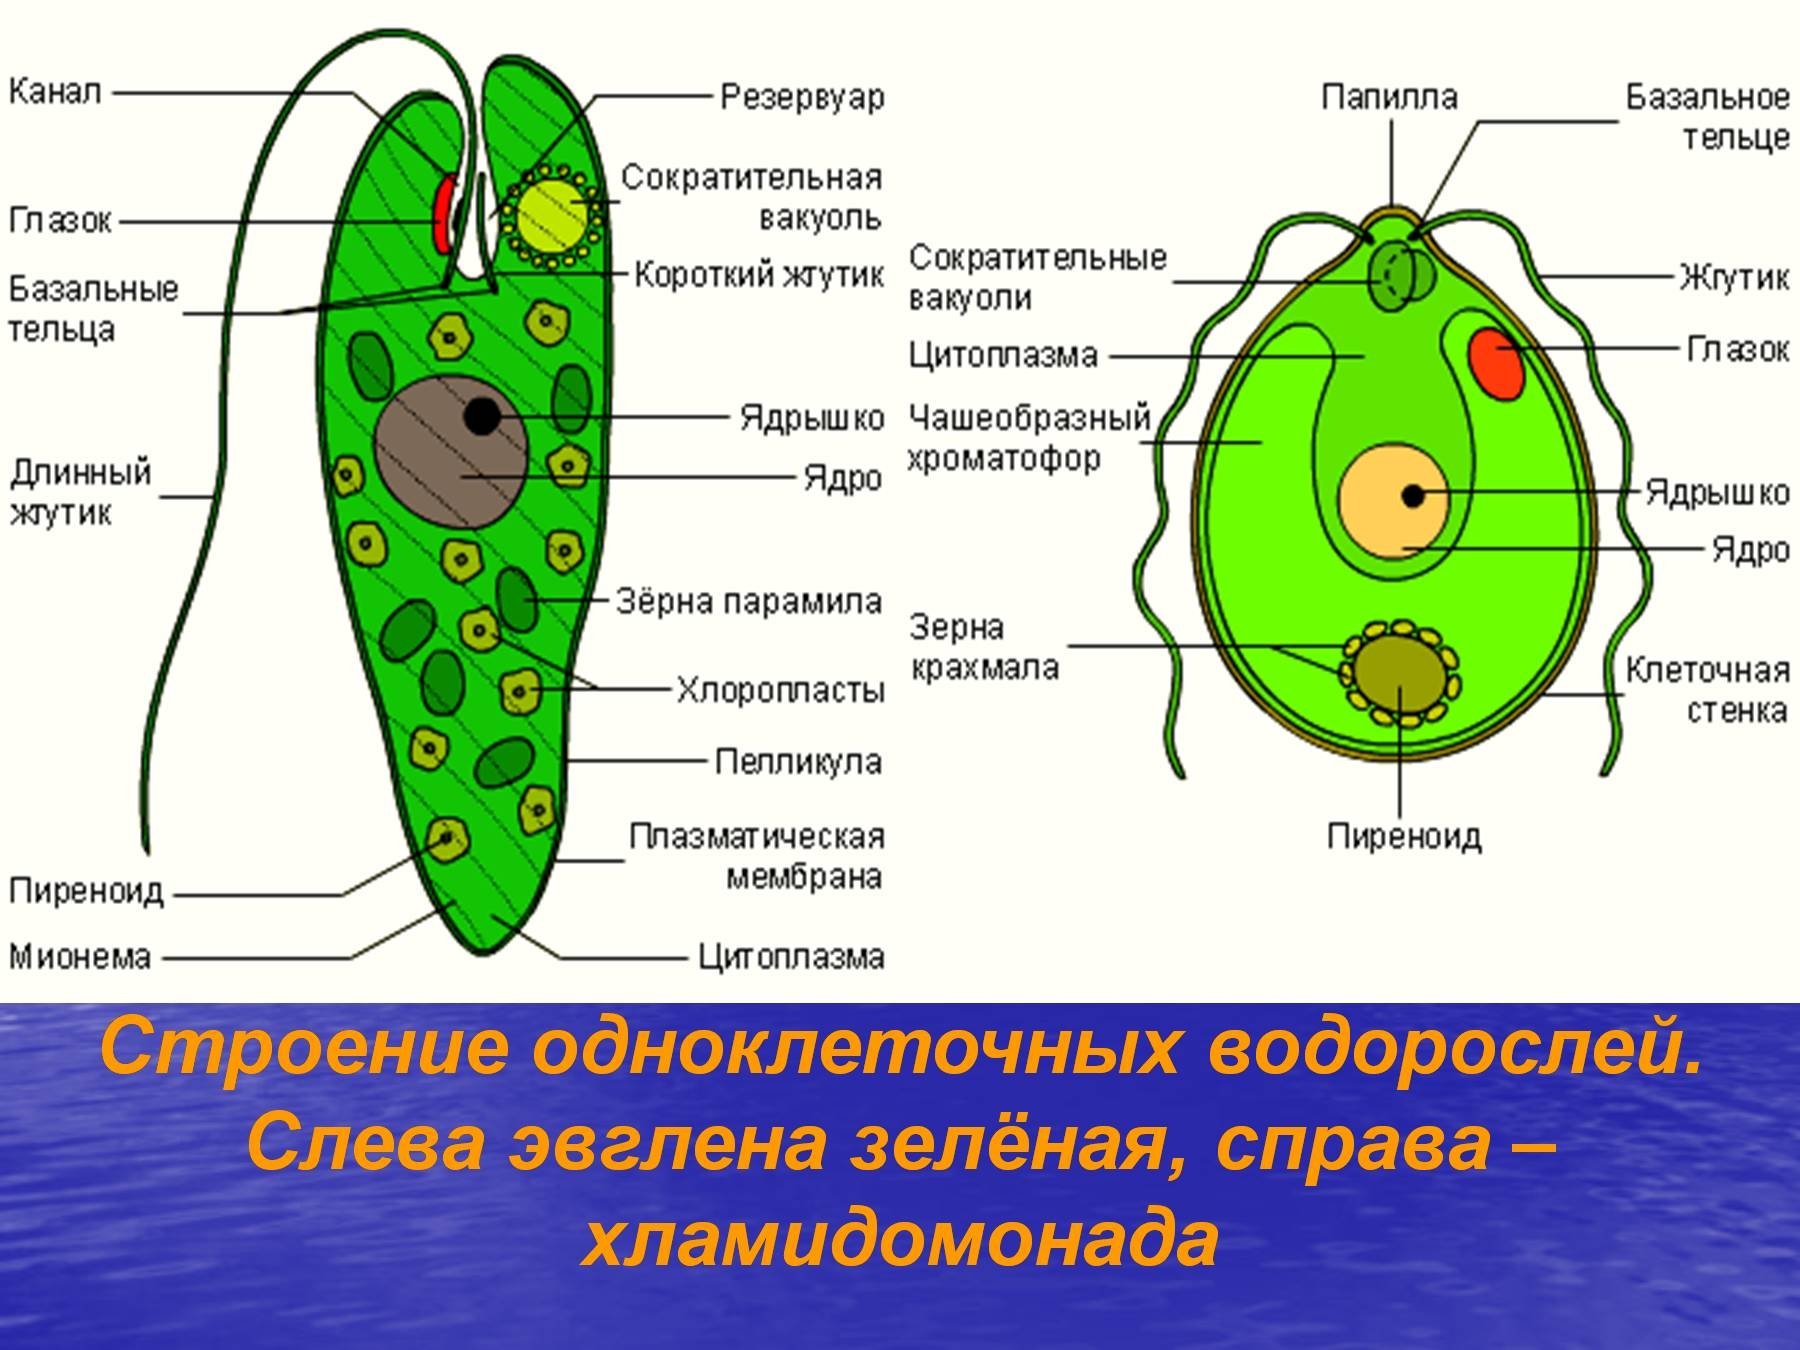 Одноклеточная зеленая водоросль хламидомонада. Биология строение одноклеточных водорослей. Строение клетки одноклеточных. Рисунок одноклеточной водоросли хламидомонады. Эвглена зеленая водоросль.